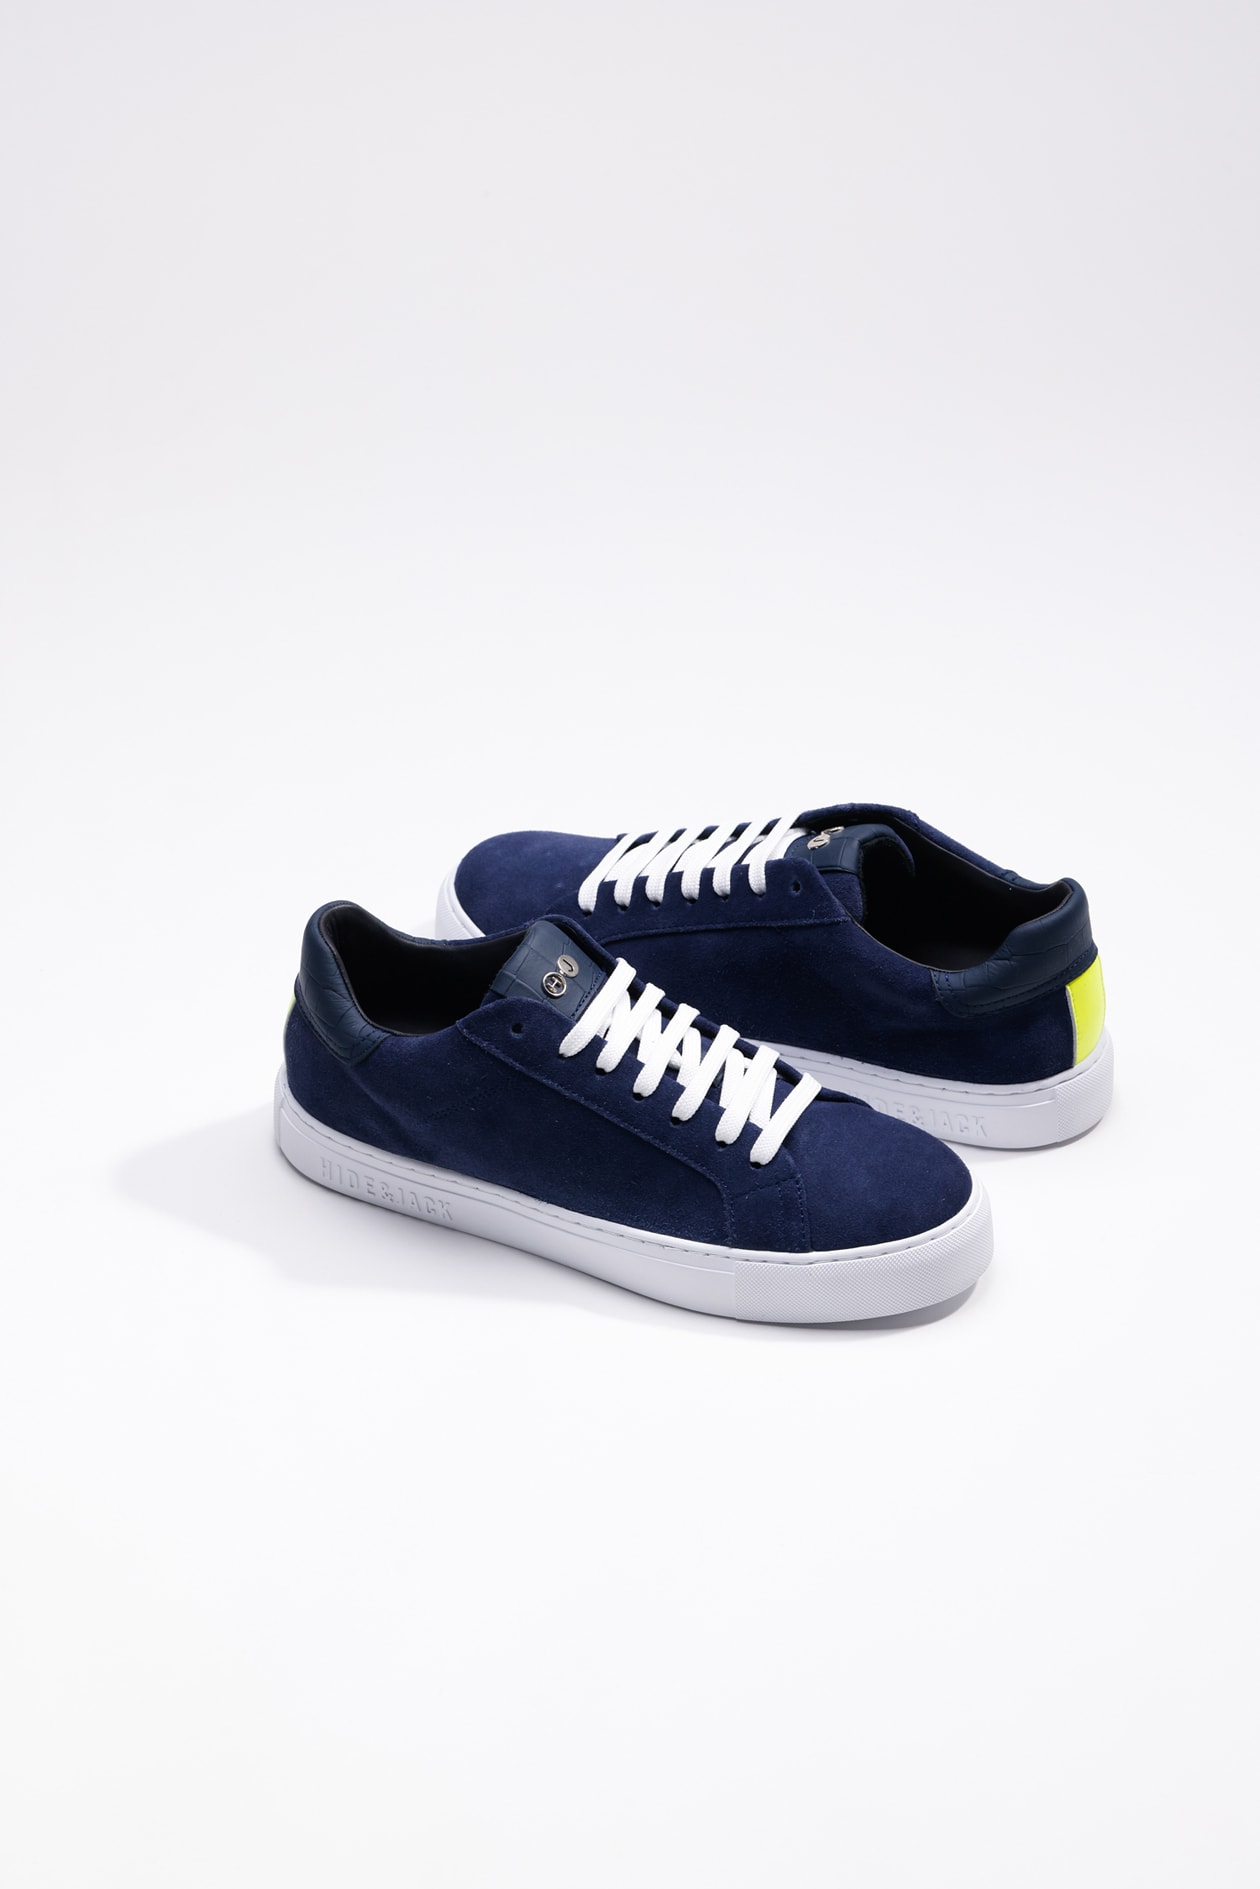 Hide & Jack Low Top Sneaker - Essence Oil Blue White